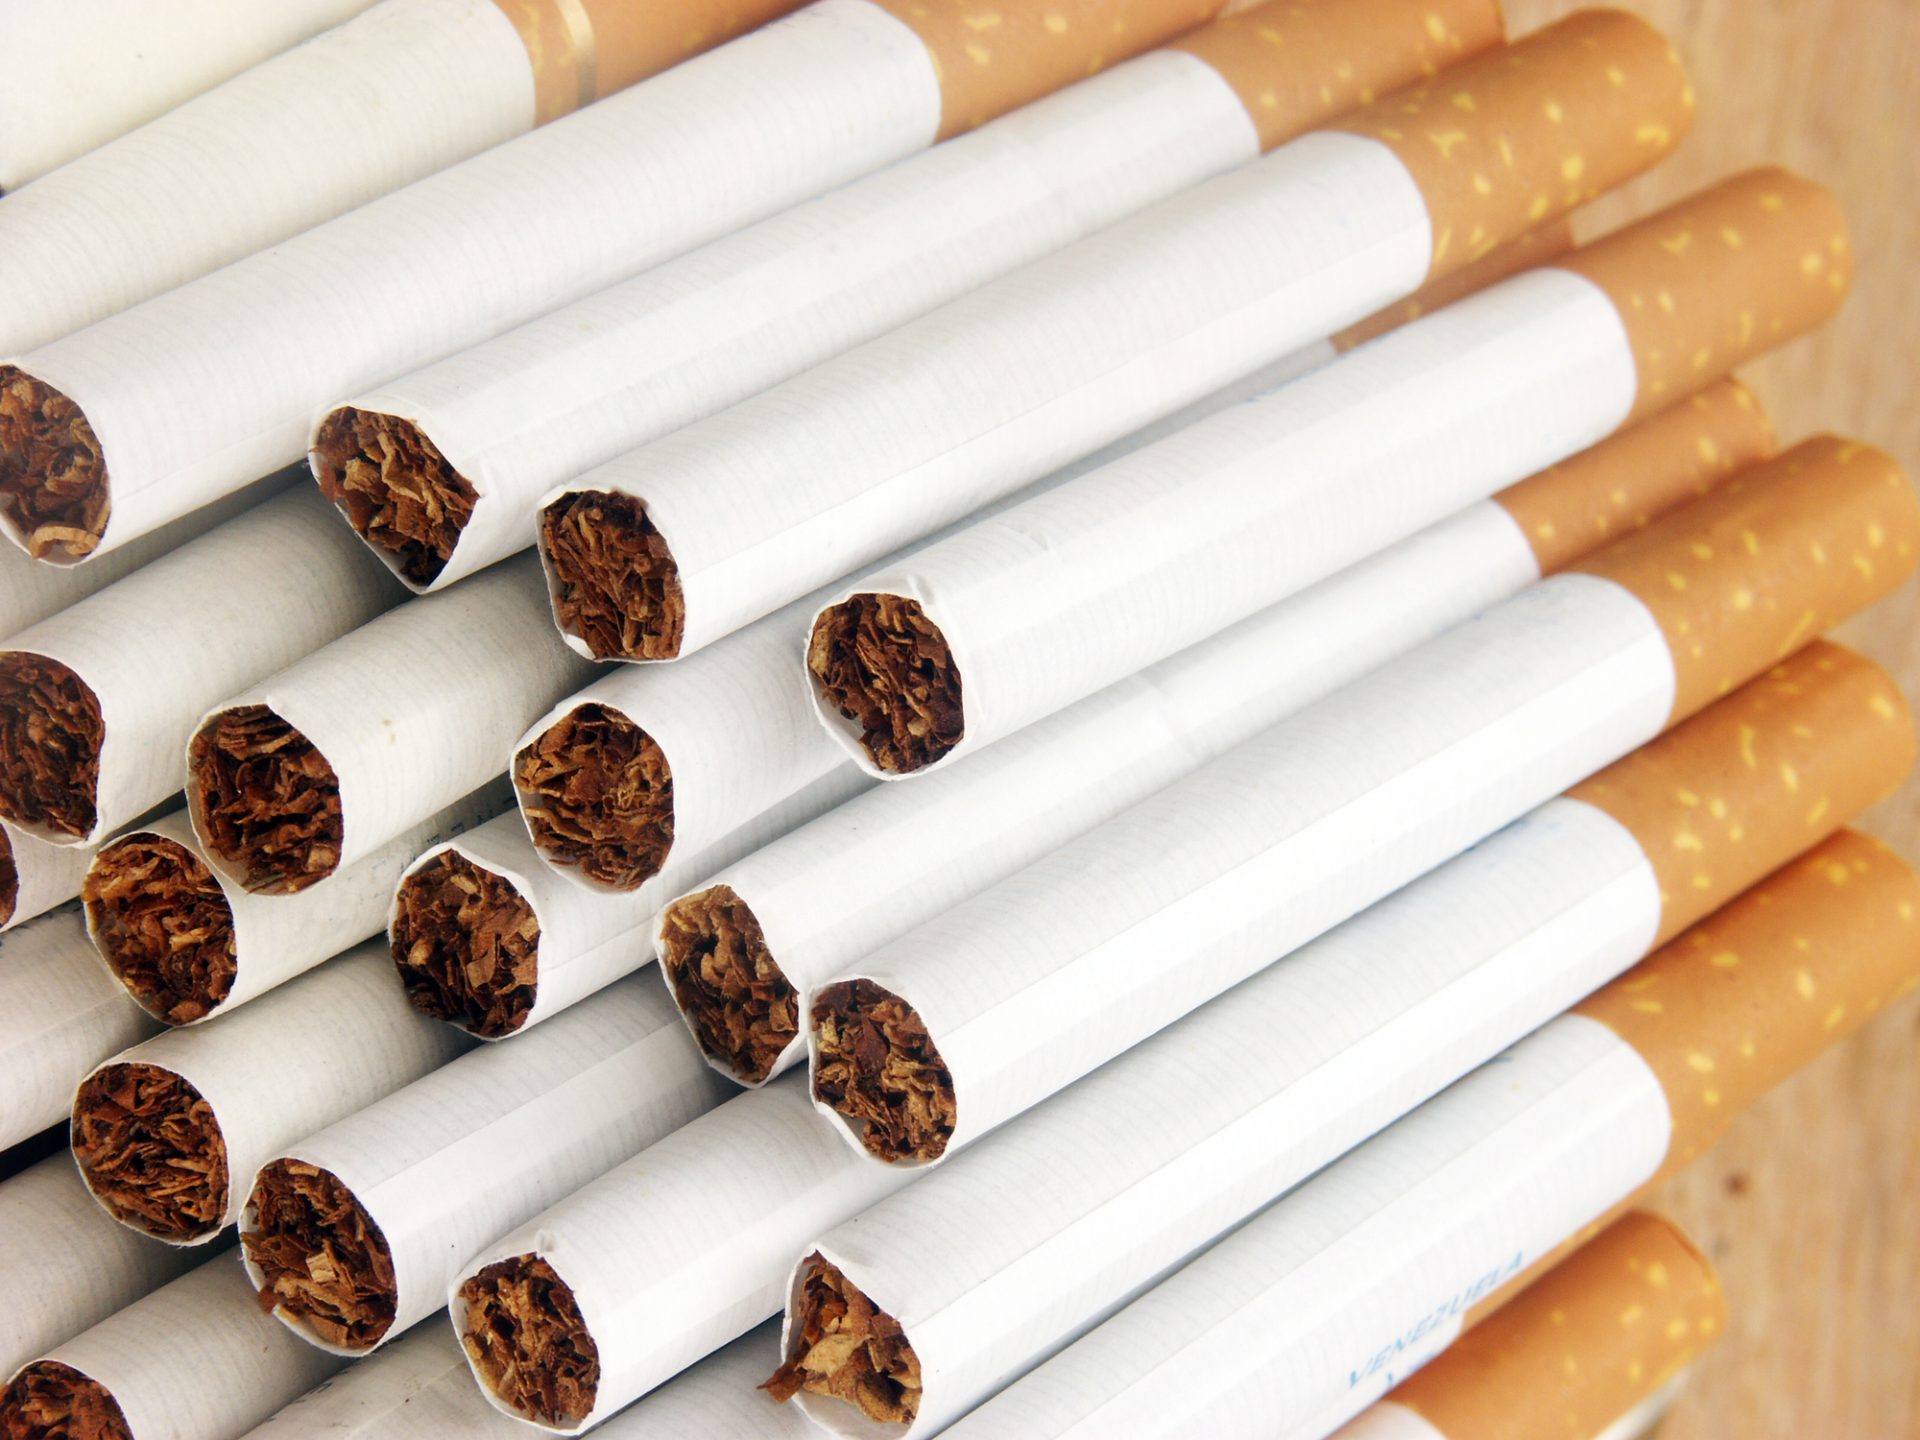 GNR apreende cerca de sete milhões de cigarros “em situação irregular”